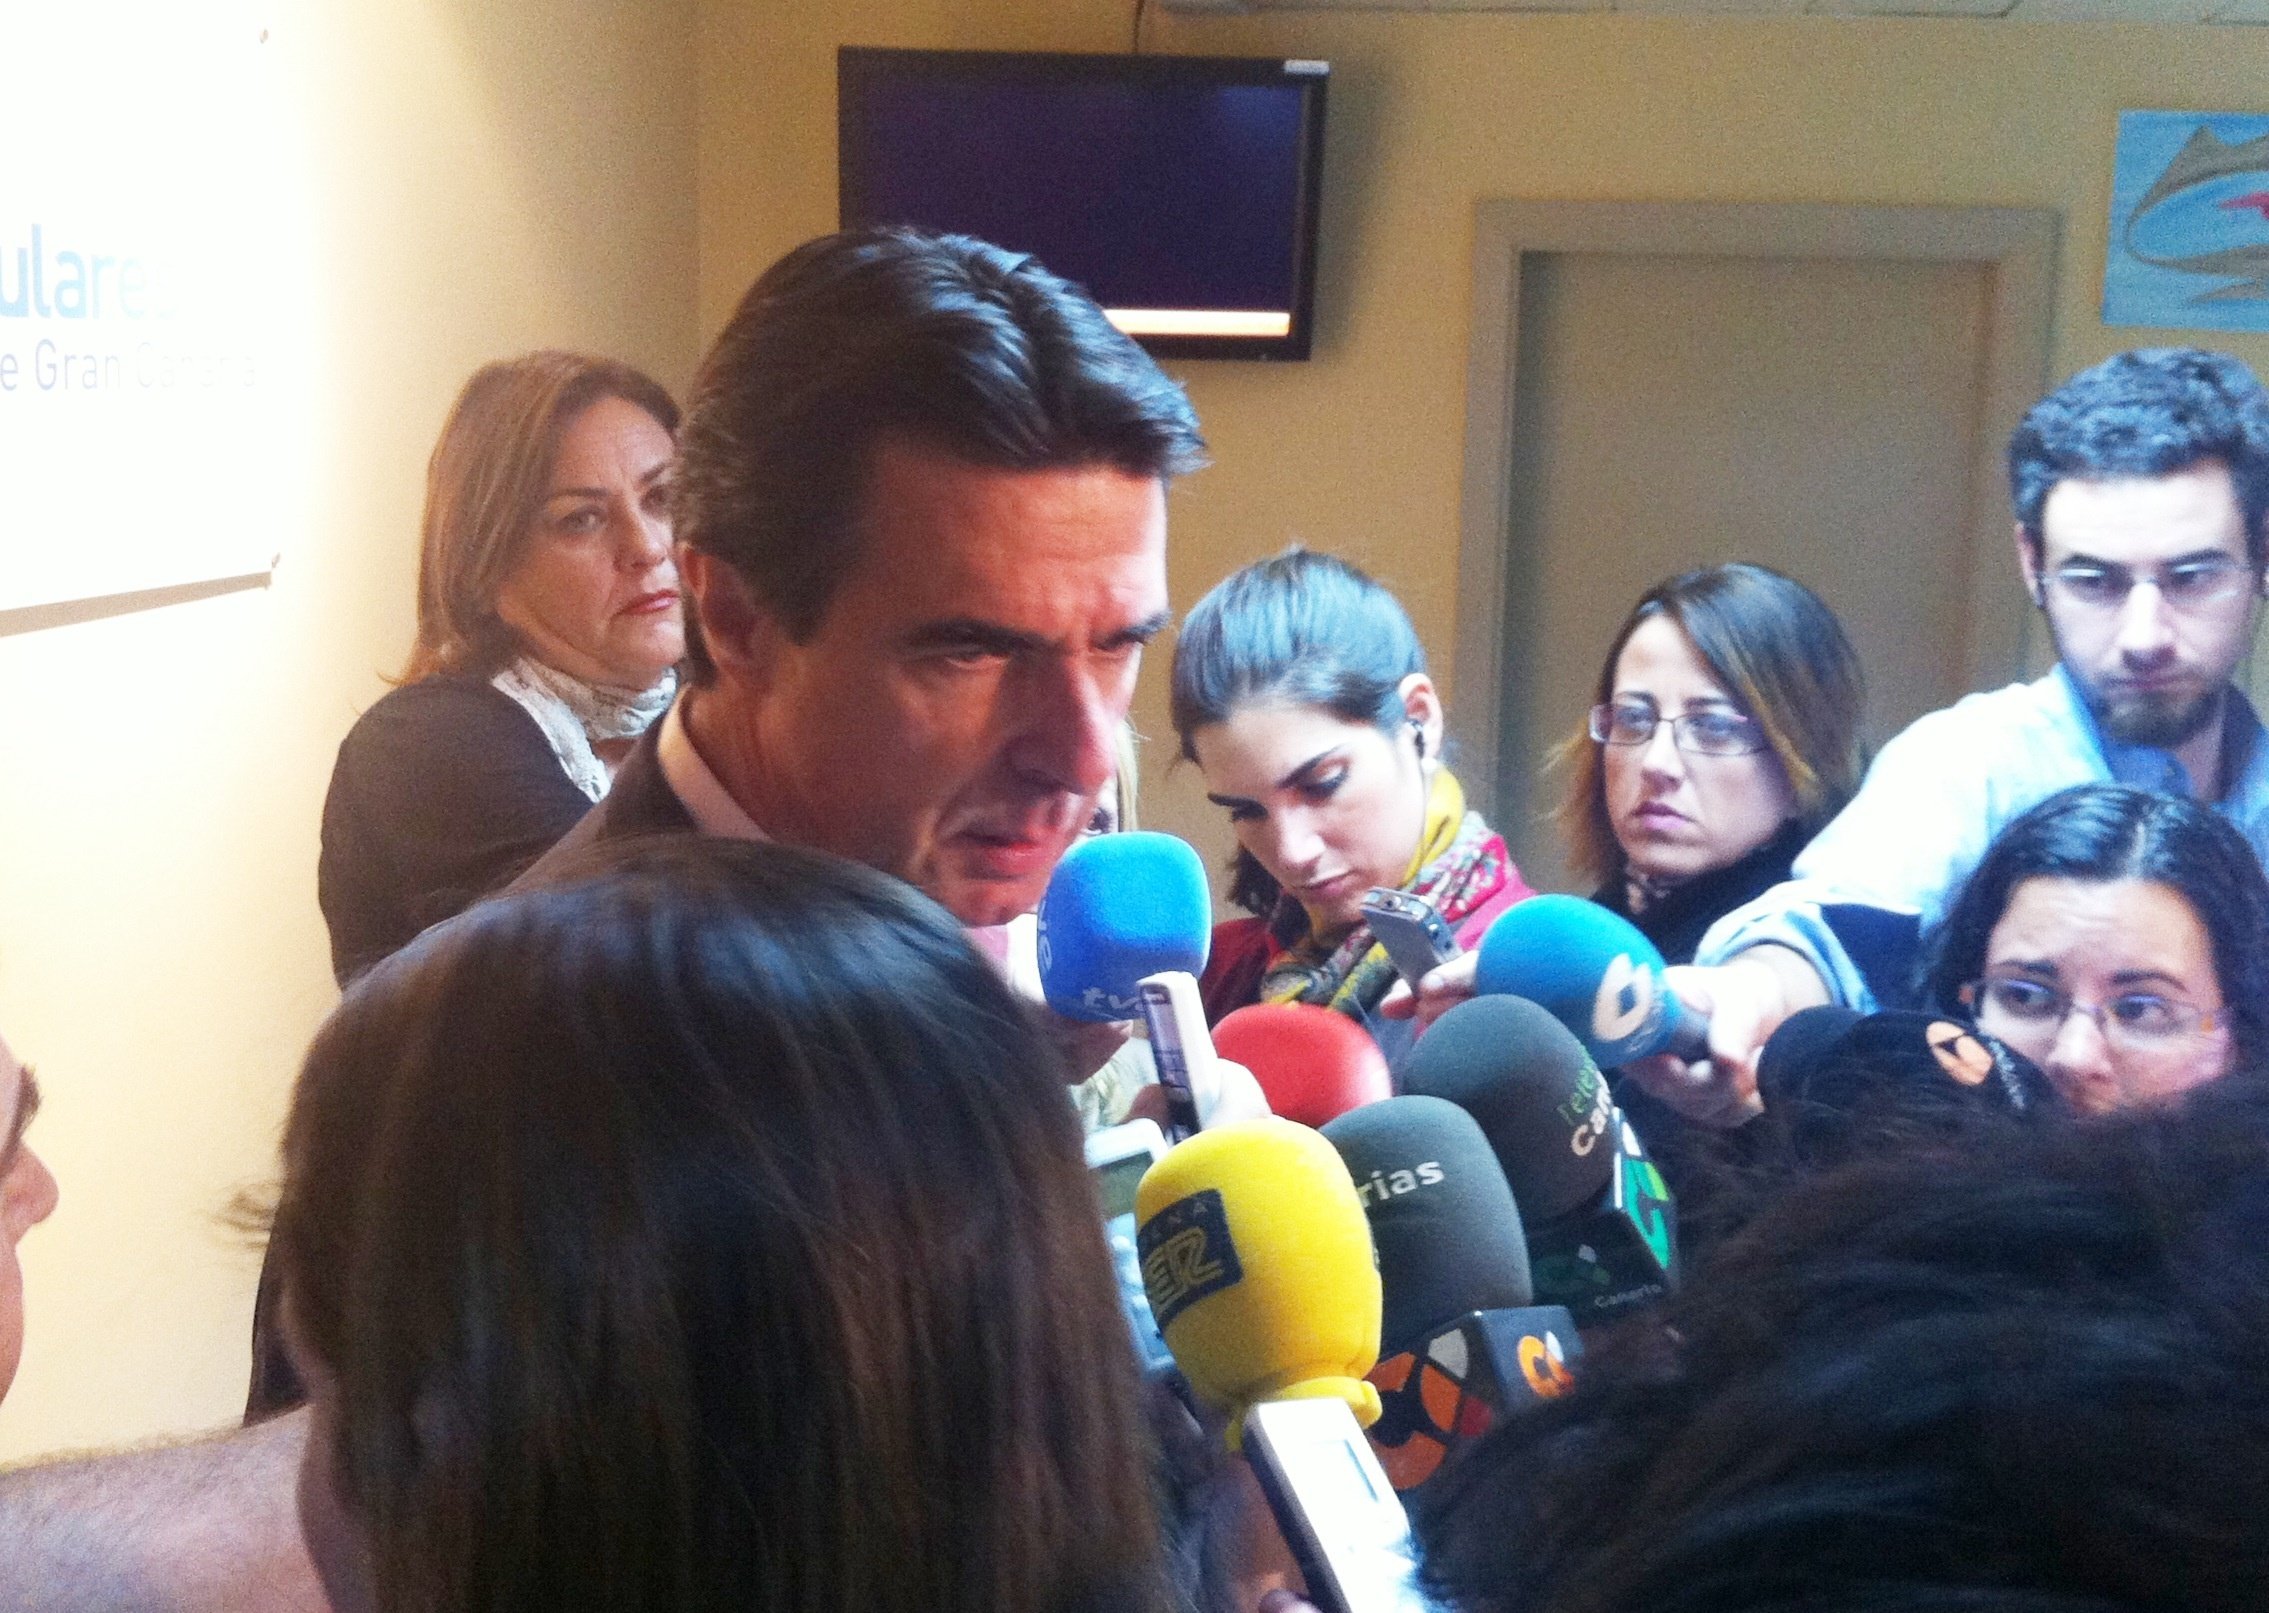 El Gobierno reconoce una situación «muy adversa» del empleo en España que les impulsa a continuar con las reformas